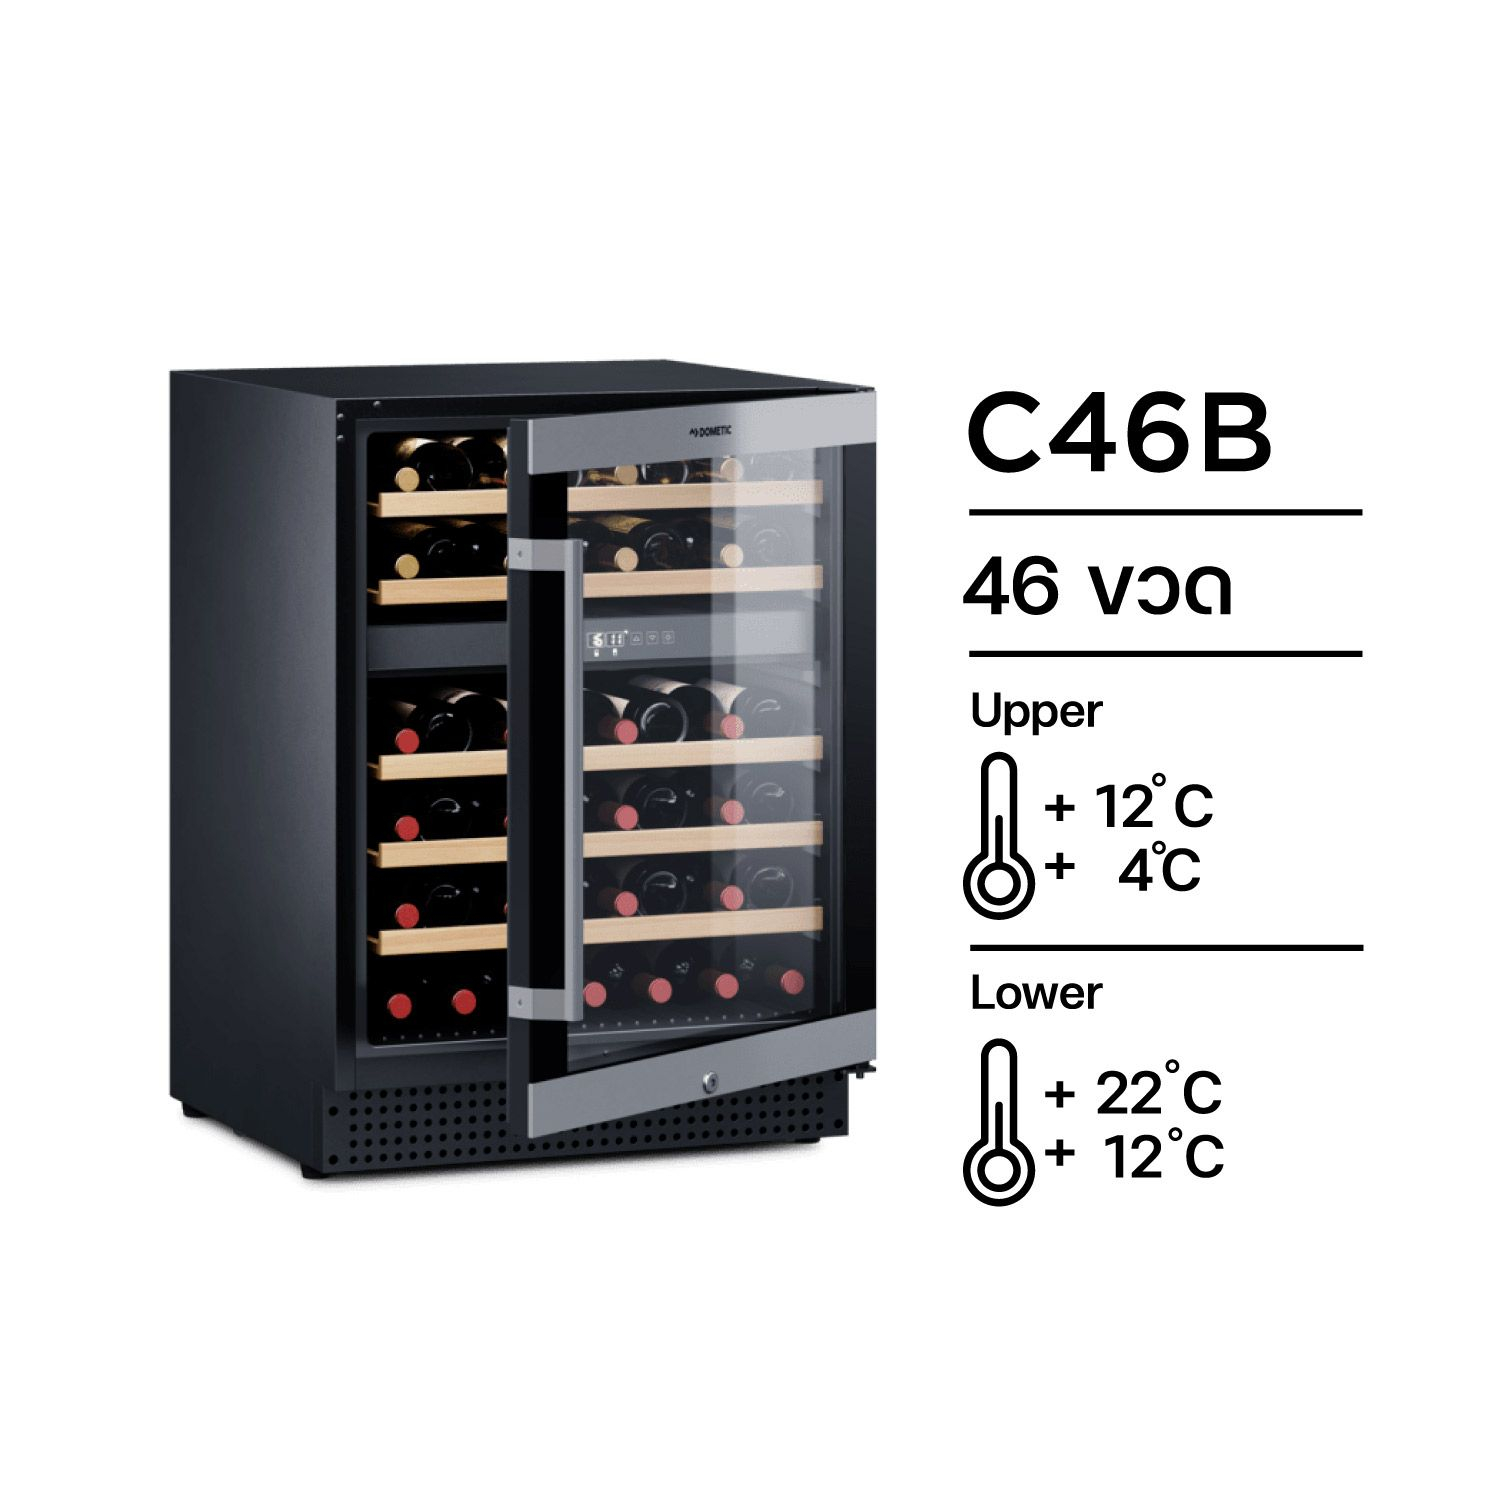 ฟรีค่าส่งDOMETIC C46B ตู้แช่ไวน์ 46 ขวด ตู้แช่ไวน์ระดับ Luxury Wine Cellar ขนาด 46 ขวด จากประเทศสวีเดน